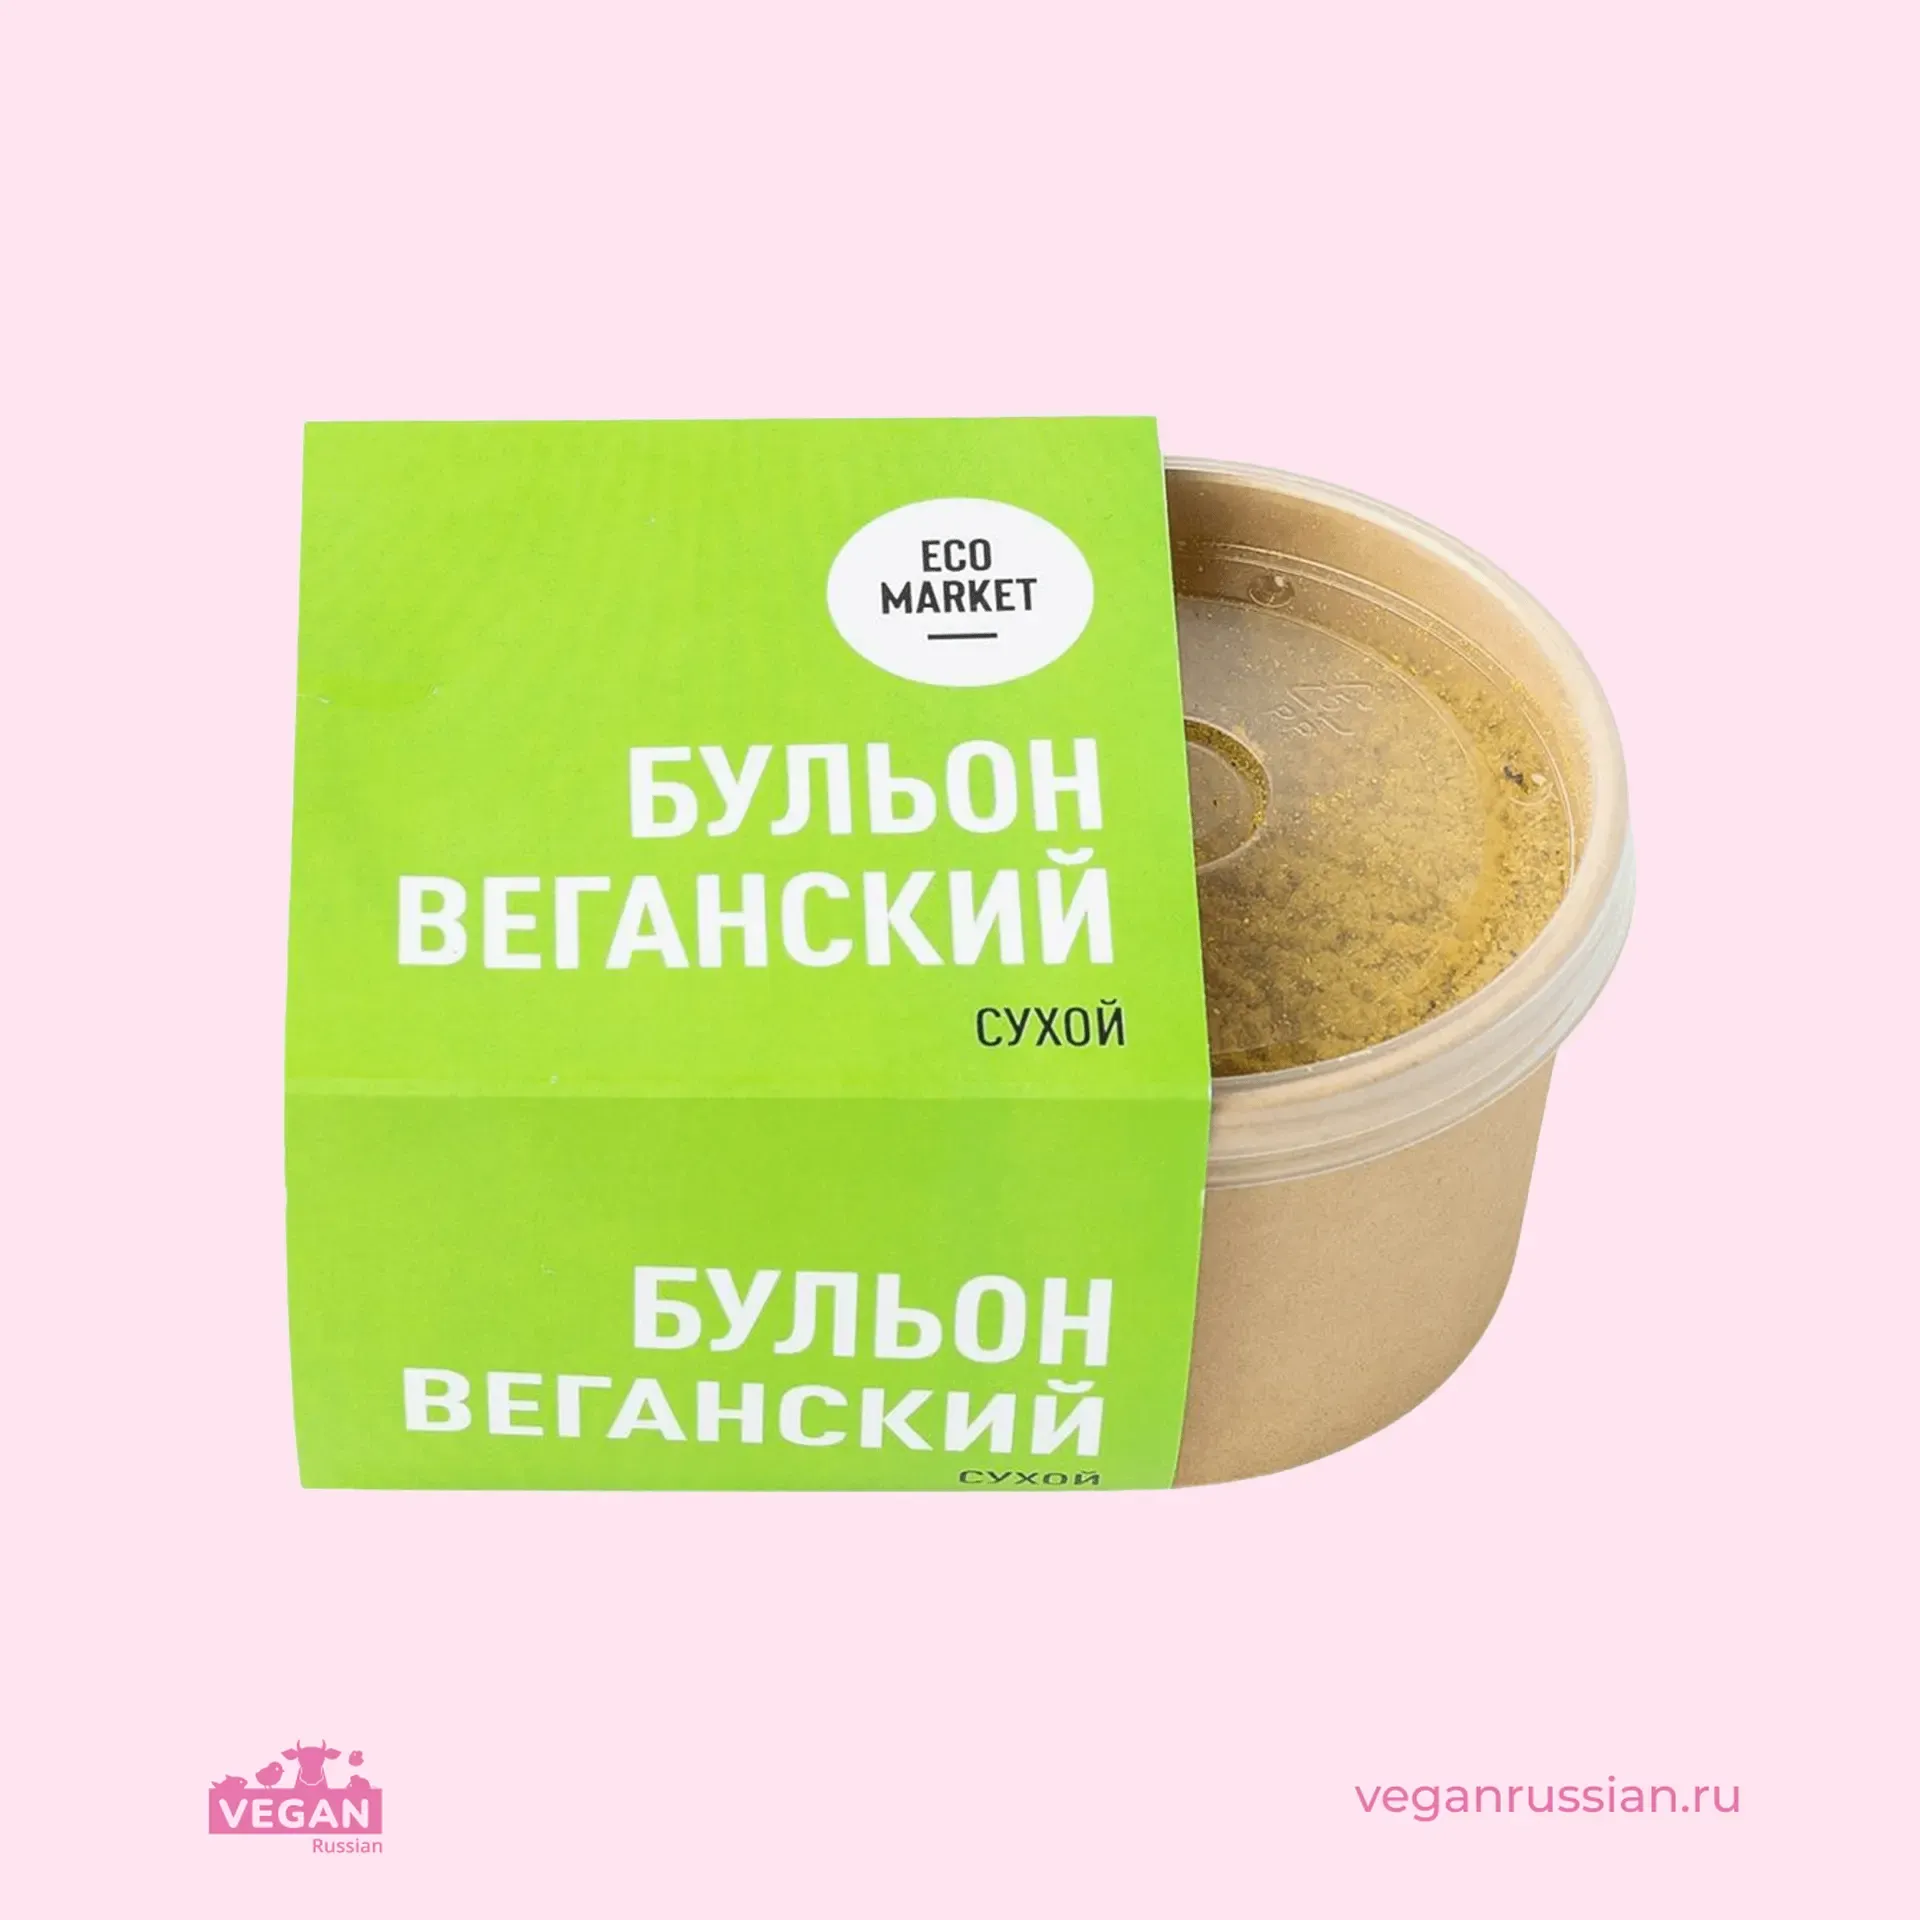 Бульон сухой Веганский Ecomarket.ru 150 г